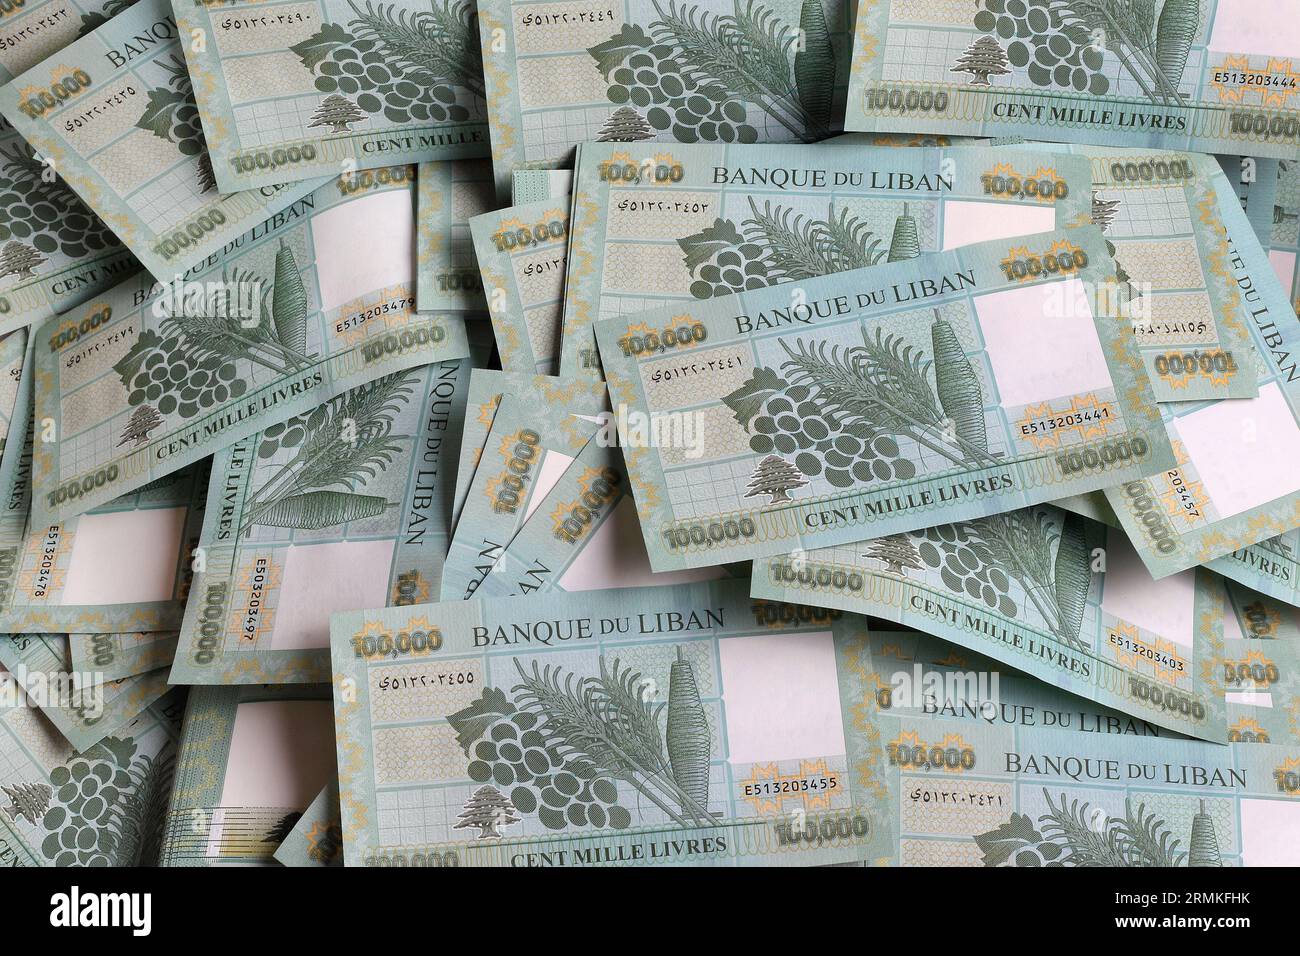 Livres libanaises, valeur nominale 100 000, symbolisant la chute de la monnaie libanaise. Banque D'Images